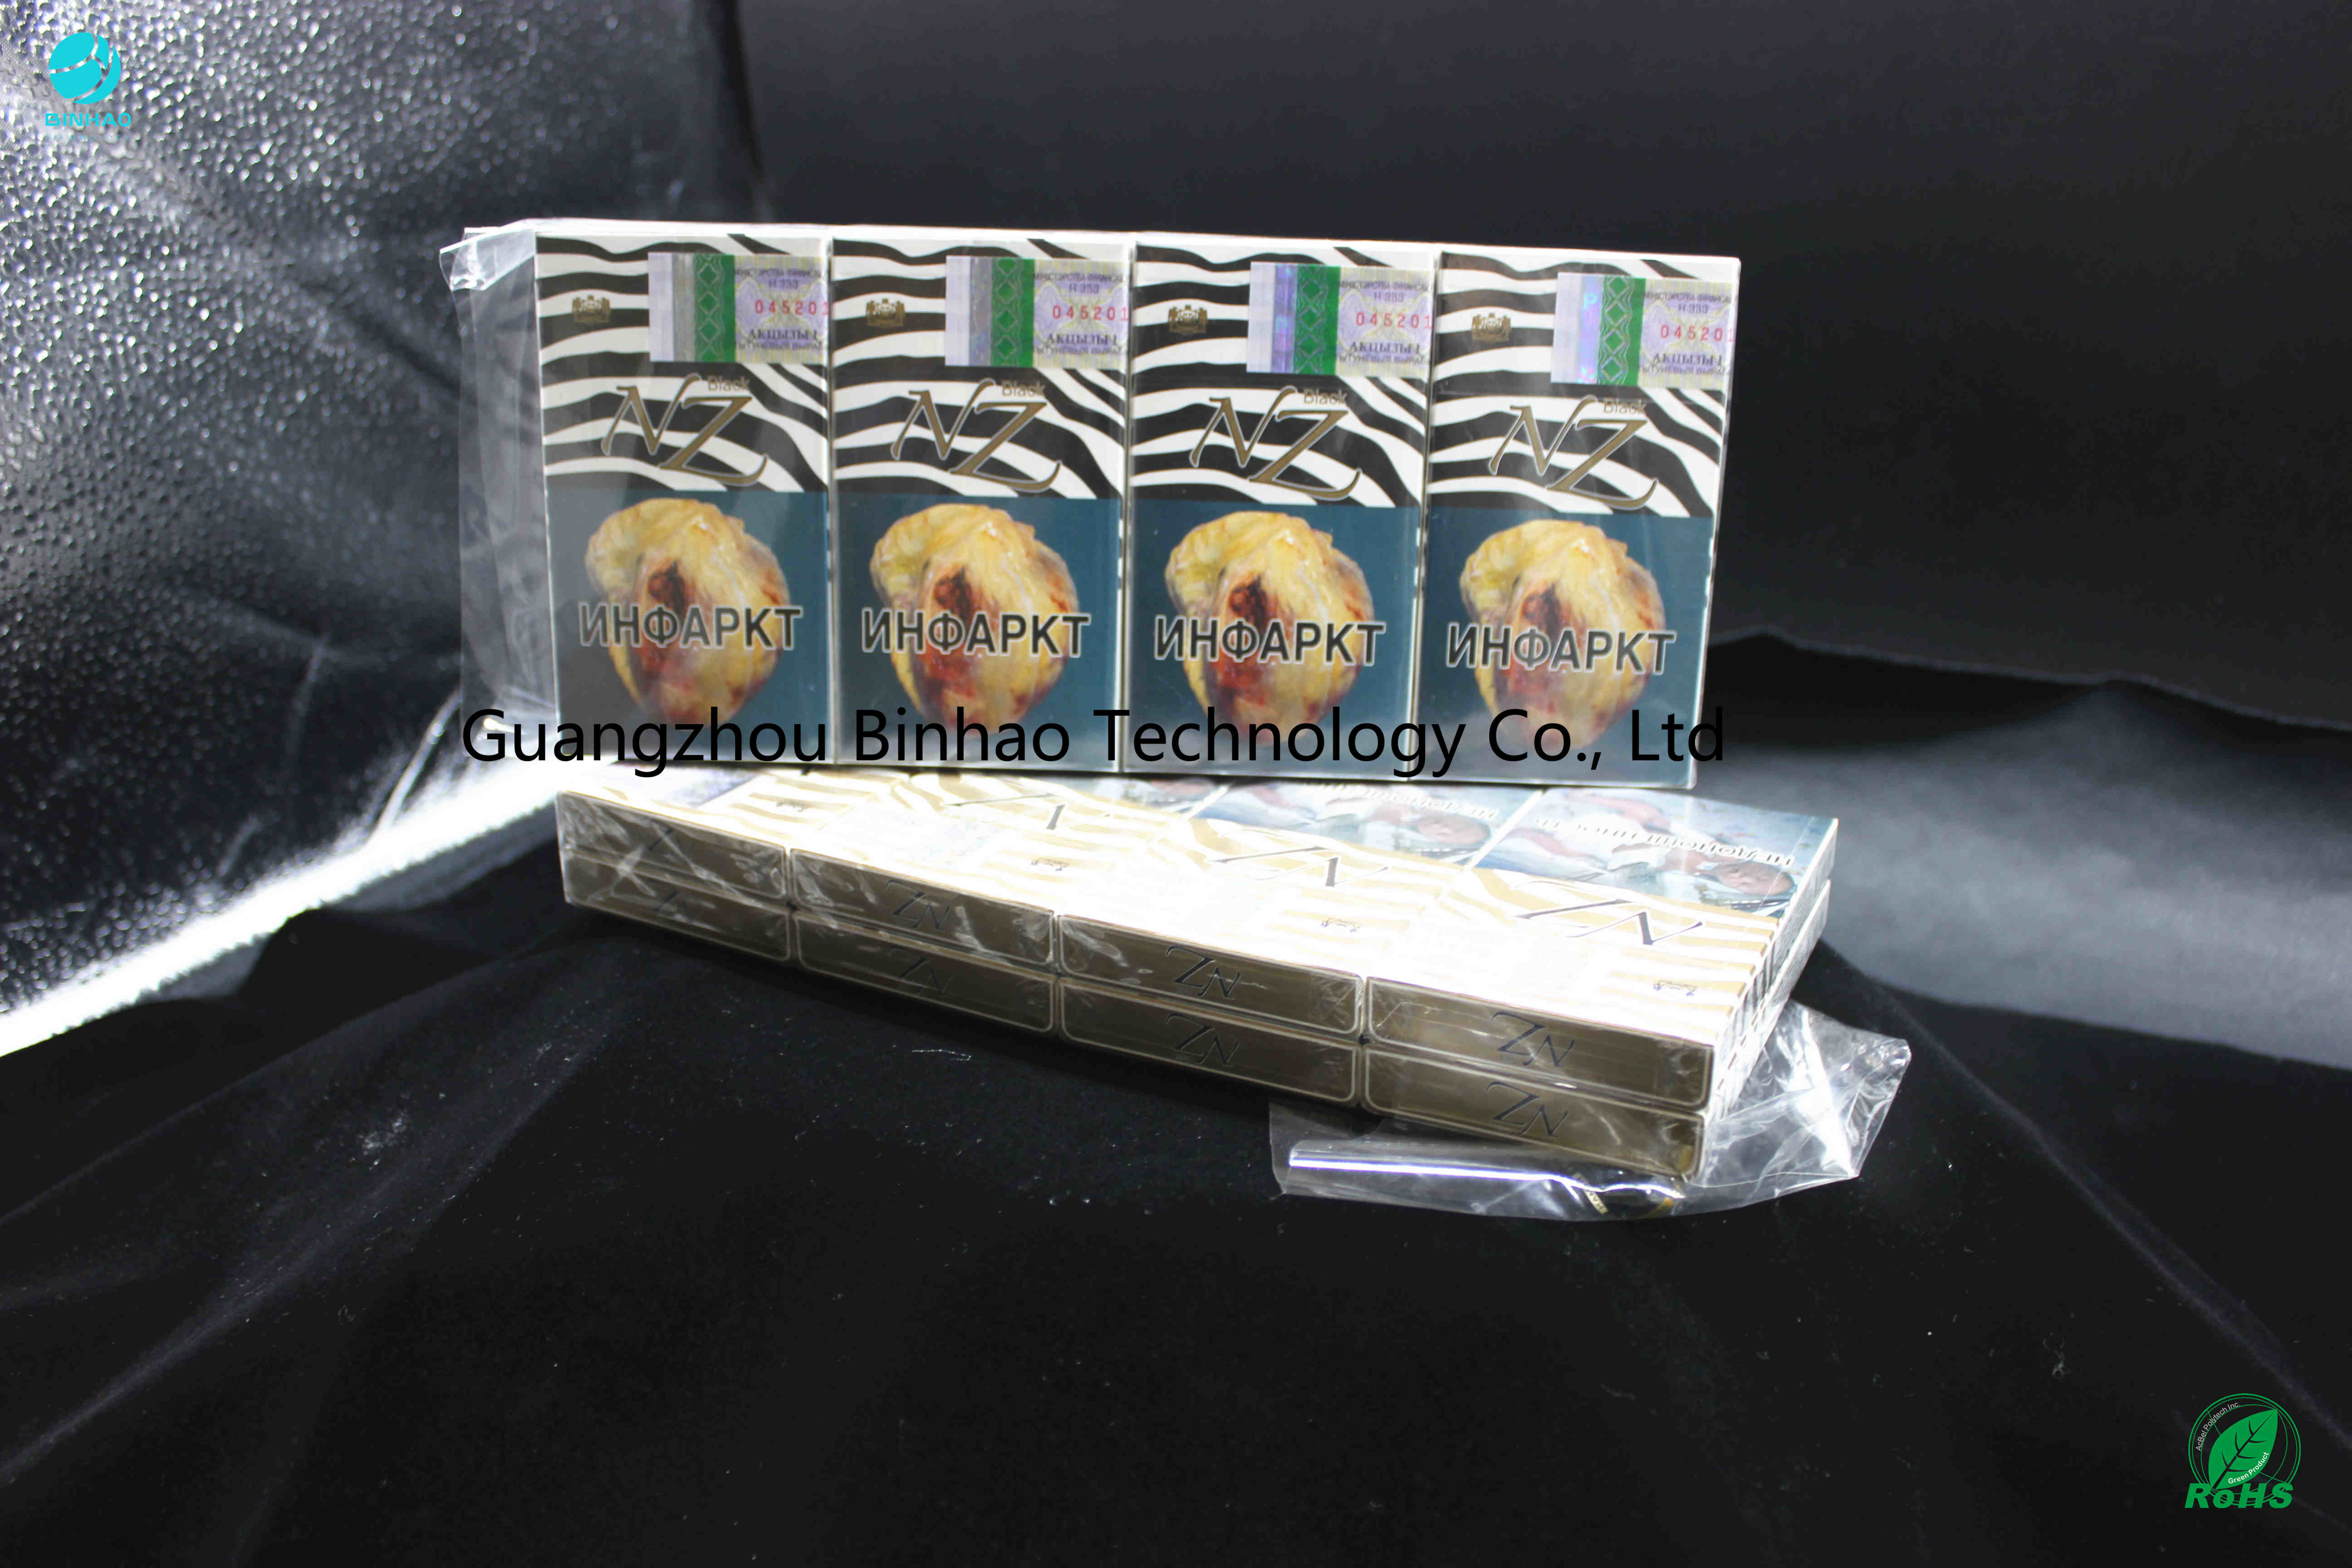 فیلم های بسته بندی PVC با دوام جعبه های سیگاری برهنه بسته بندی شده